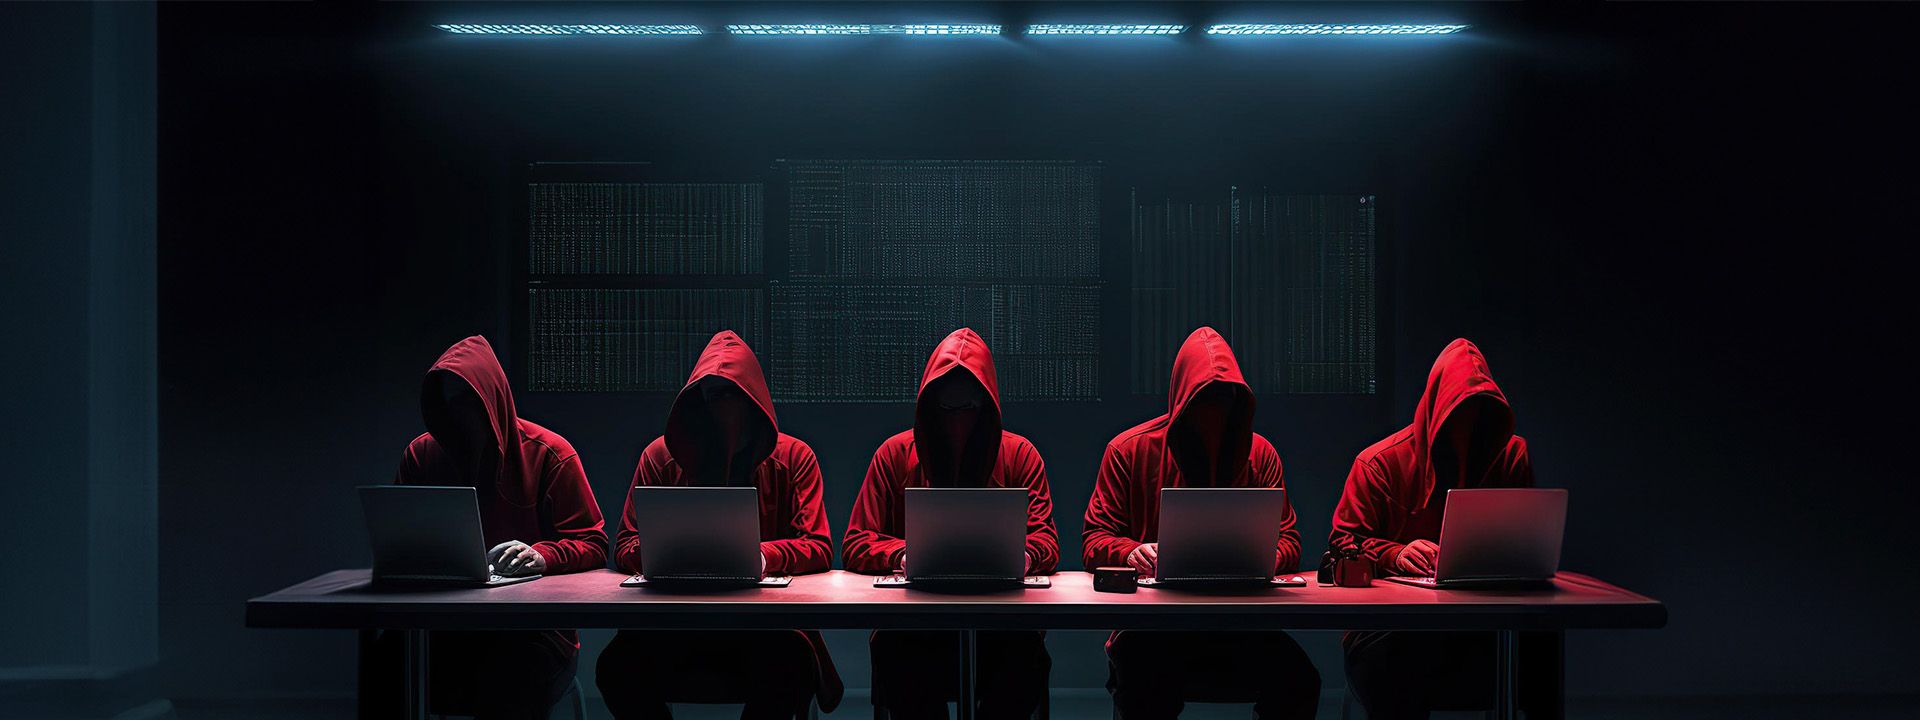 Cibercrime descodificado: APT28 e a saga dos ataques direcionados!